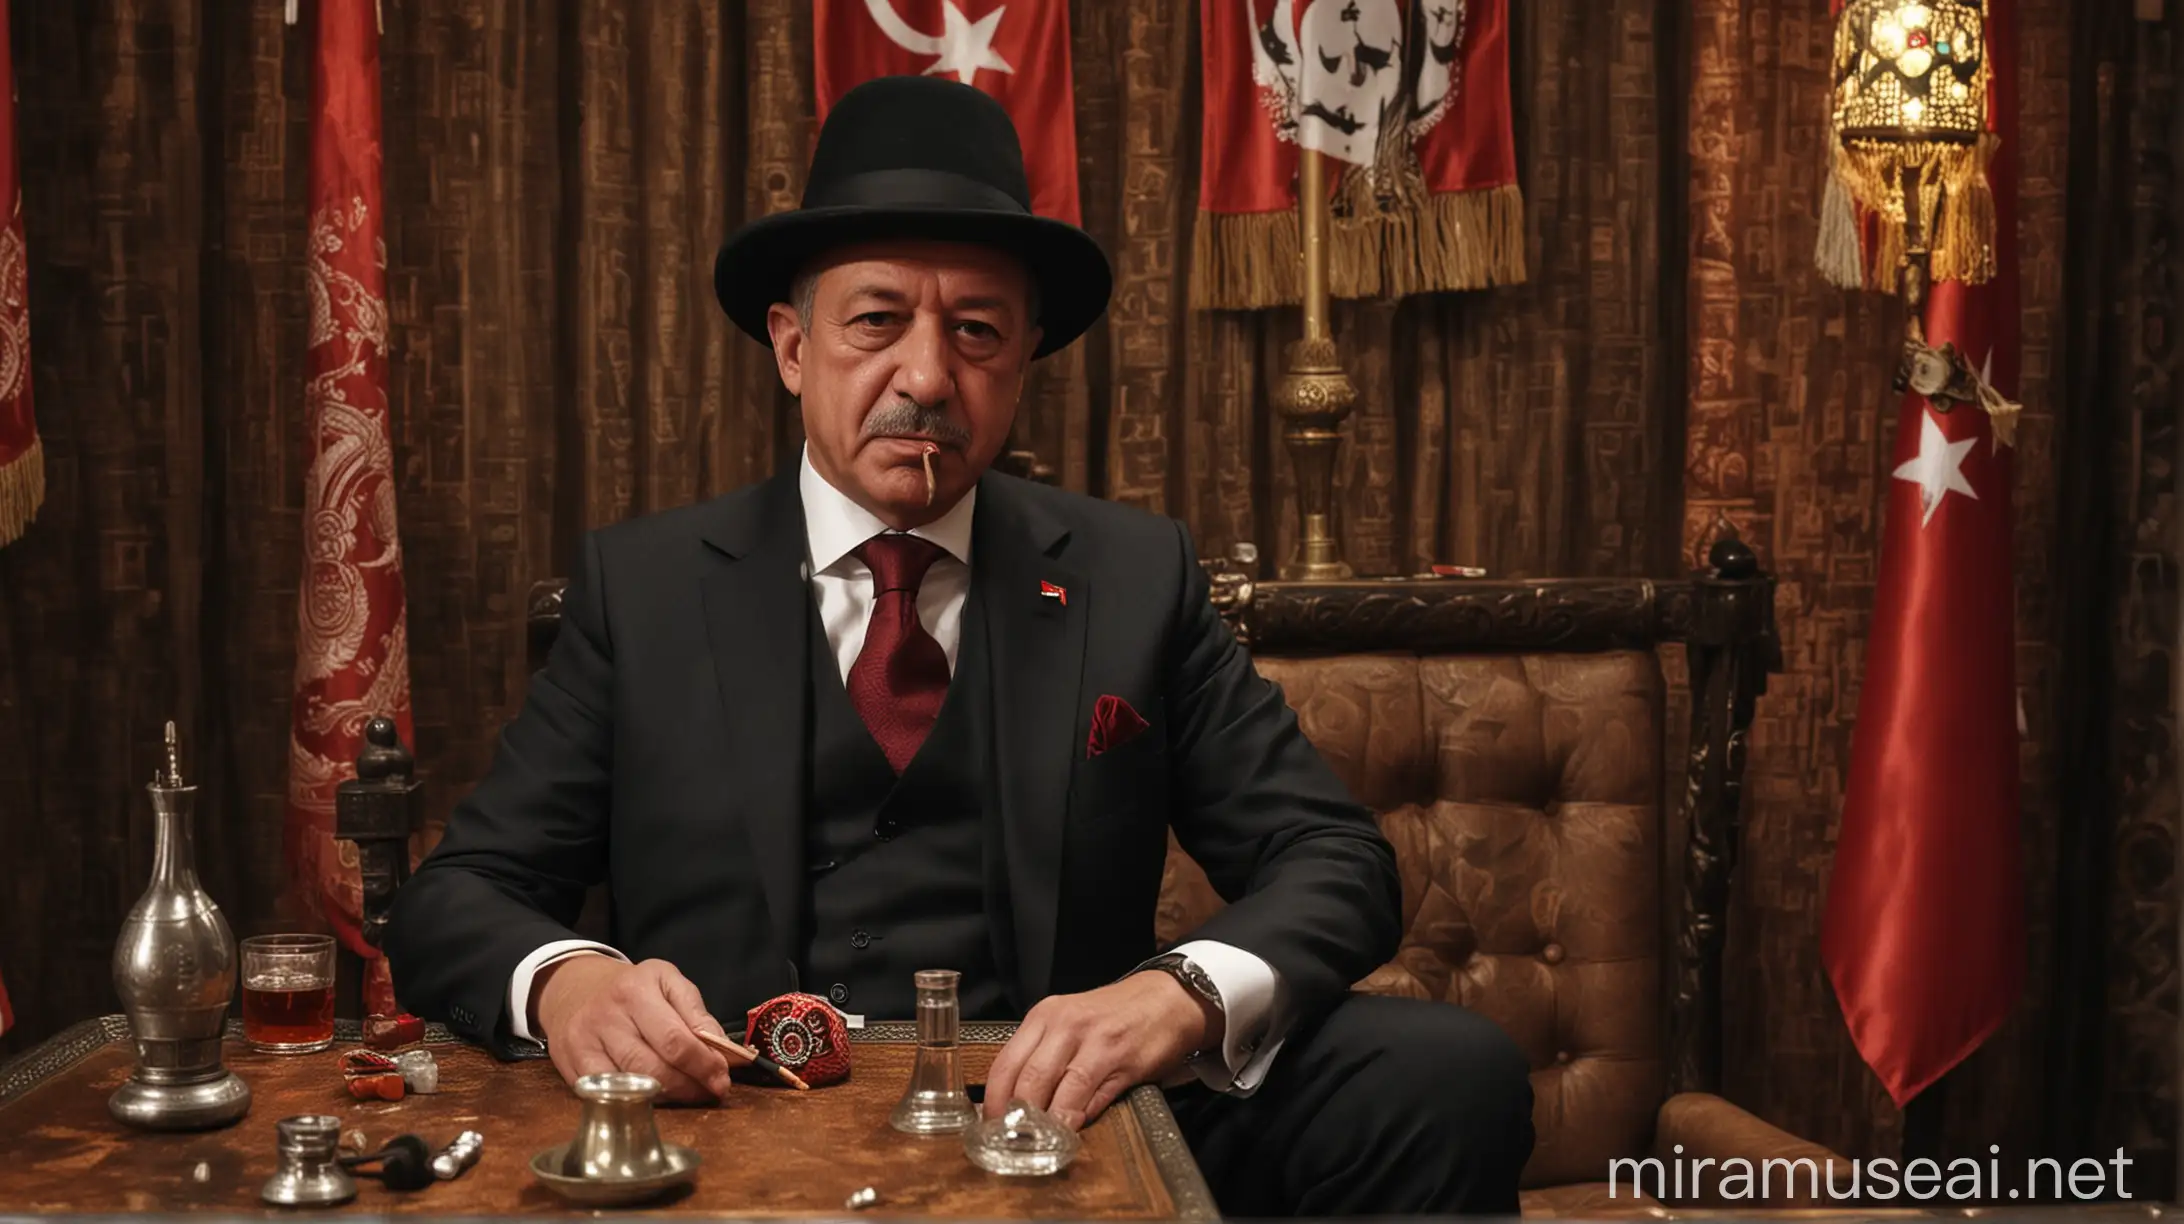 Der türkische Präsident sitzt in einer Shisha Bar und raucht eine Zigarre. Er sitzt still in einem Anzug und auf dem Kopf trägt er einen Strohhut, dass ein rotes band hand. die türkische Flagge ist im Hintergrund auf dem Tisch steht ein türkischer tee